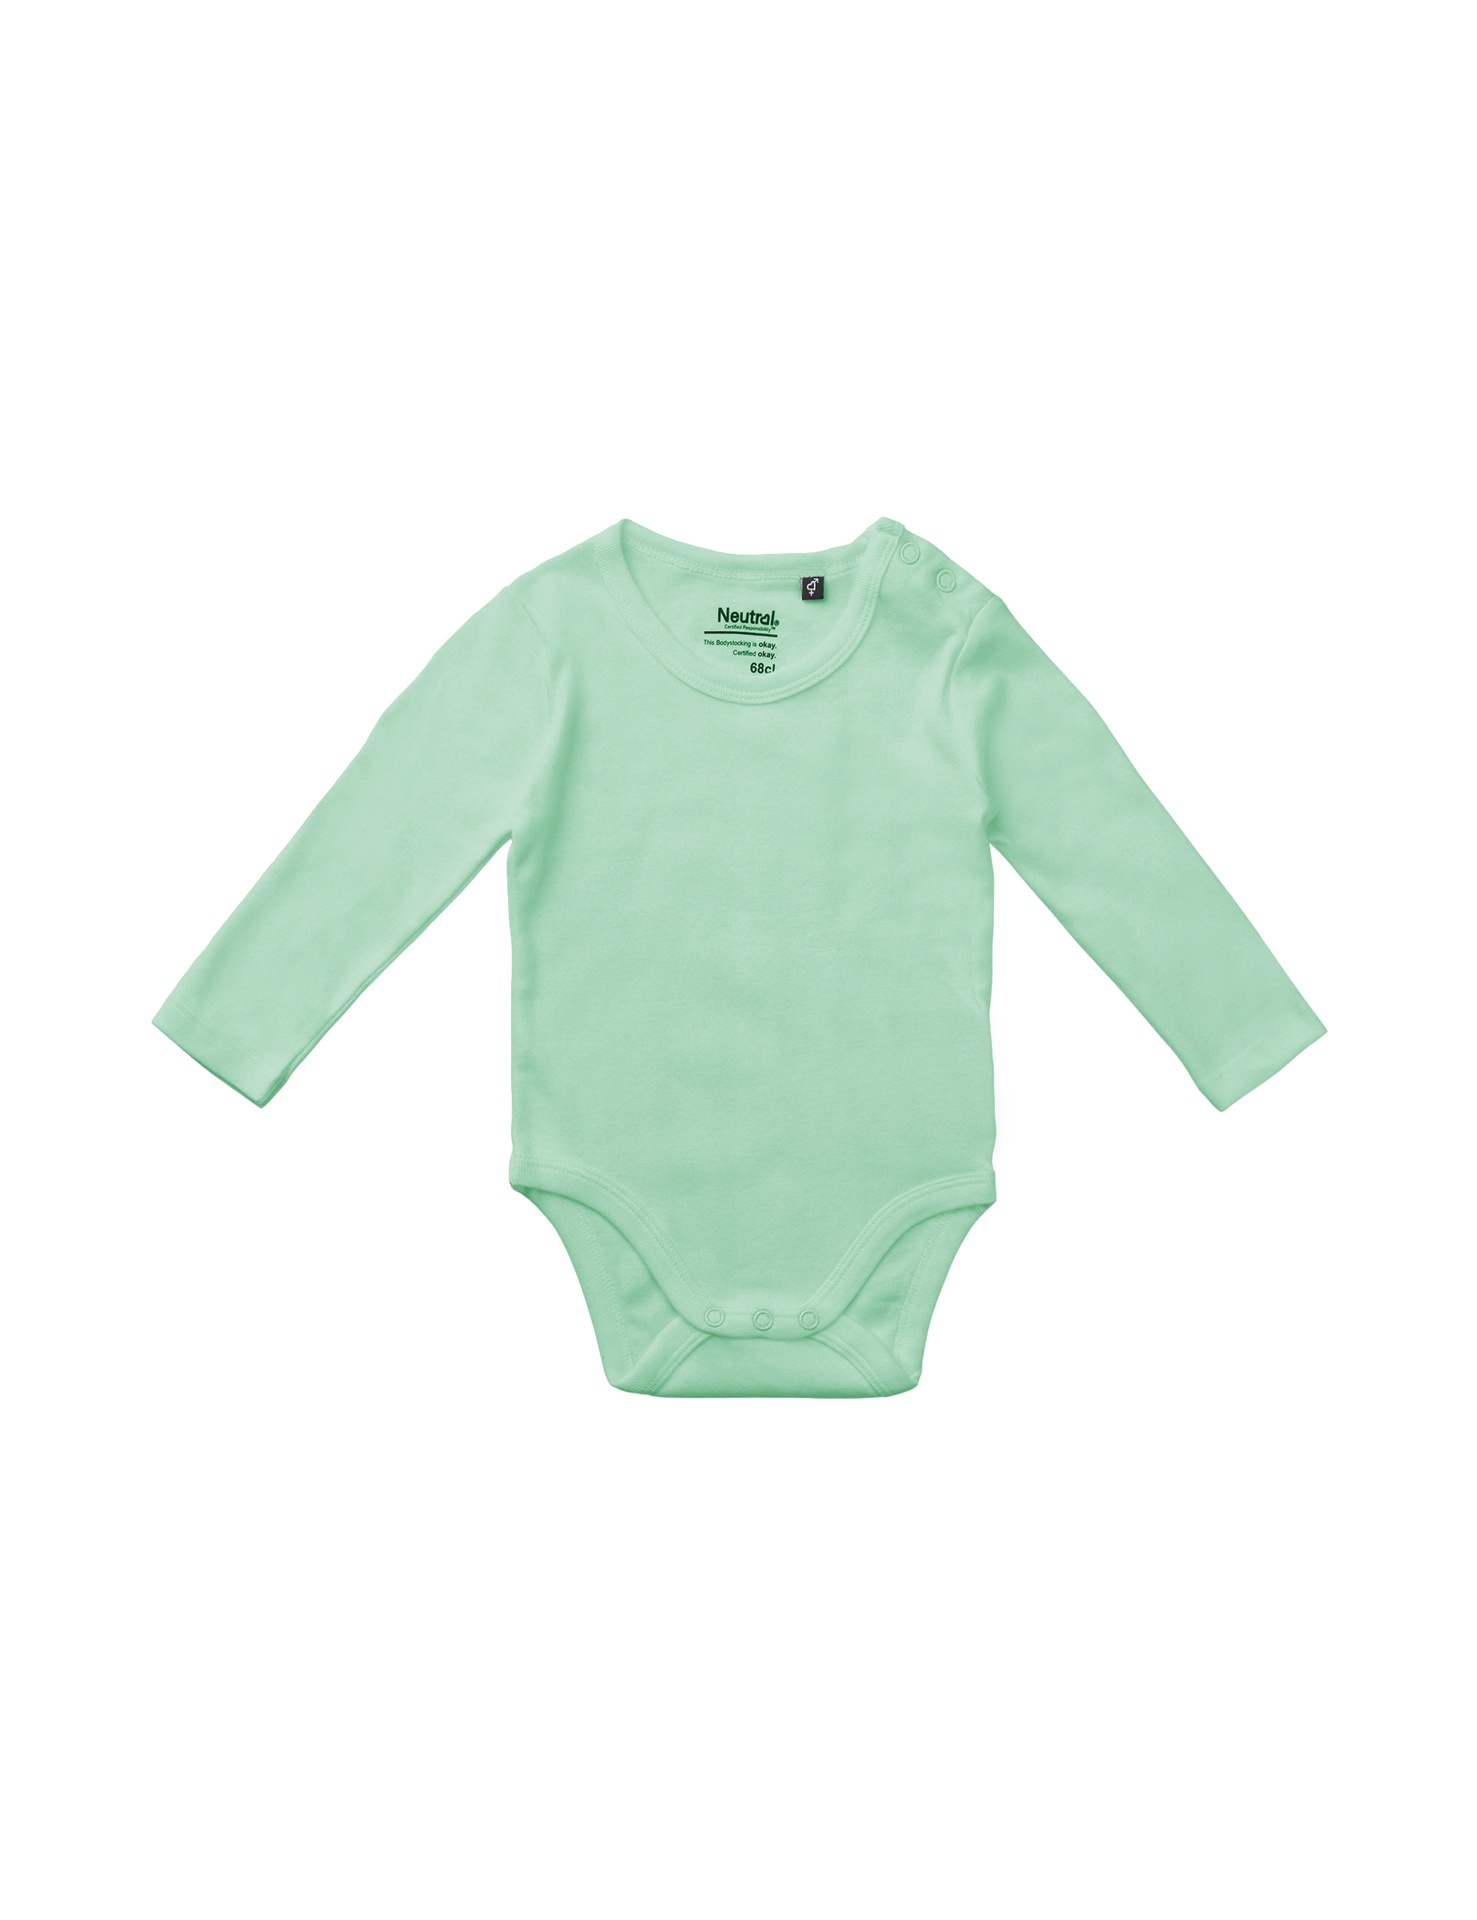 [PR/05740] Babies Long Sleeve Bodystocking (Dusty Mint 40, 80 cm)